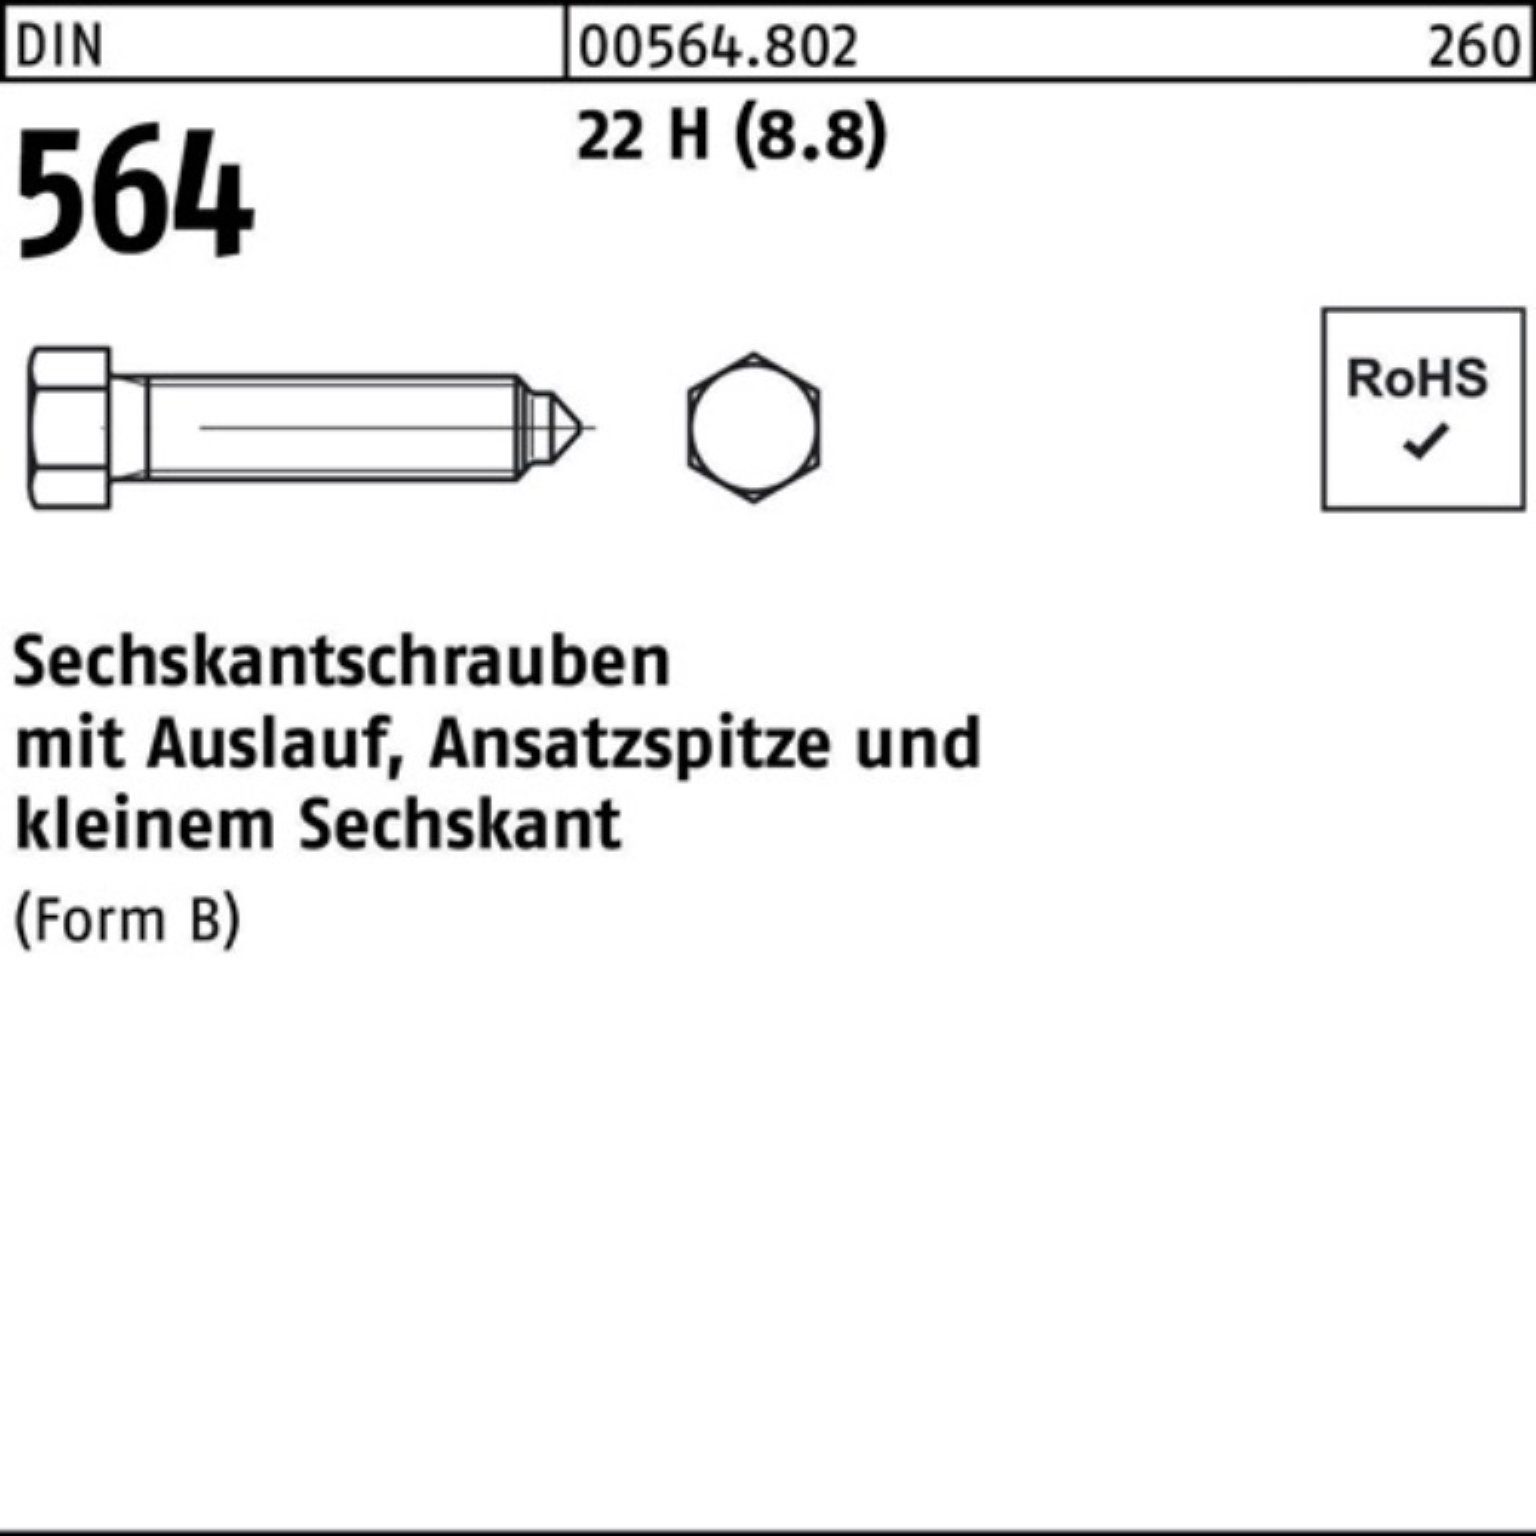 50 Pack DIN 564 Sechskantschraube Ansatzspitze/Auslauf 22 BM 100er Reyher Sechskantschraube 10x